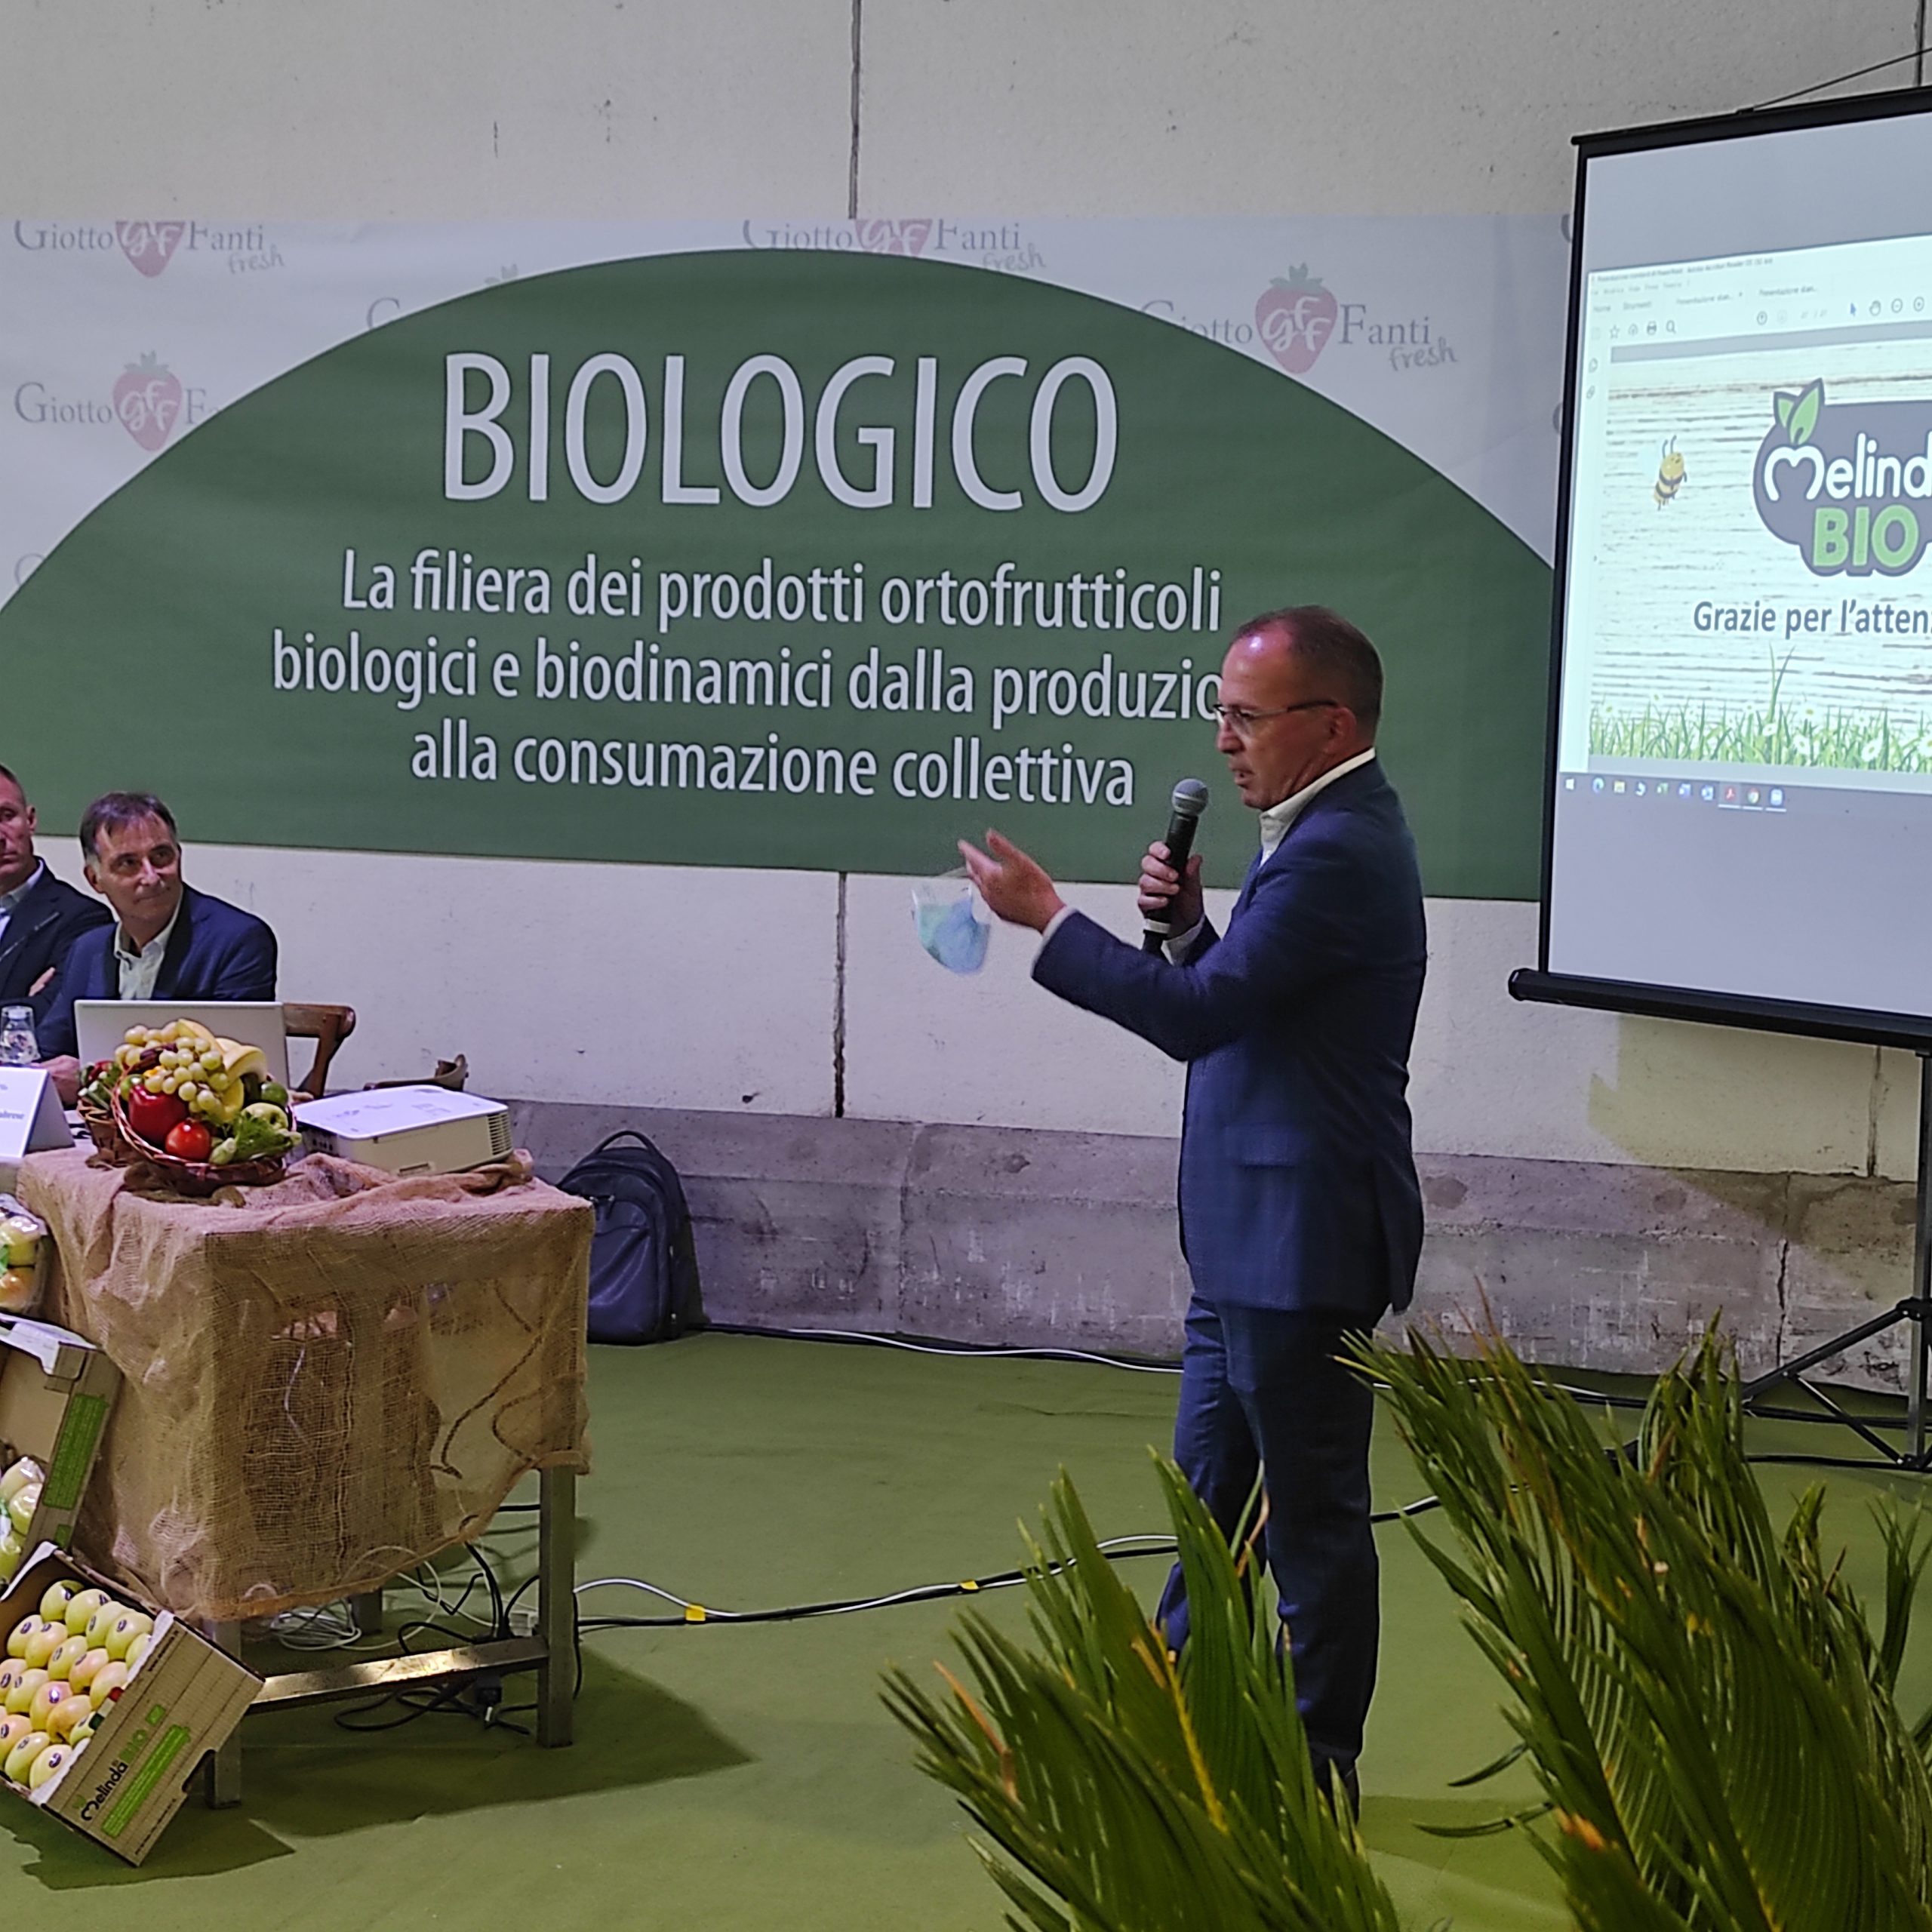 Biologico-Giotto-Fanti-Claudio-Maffei-scaled.jpg